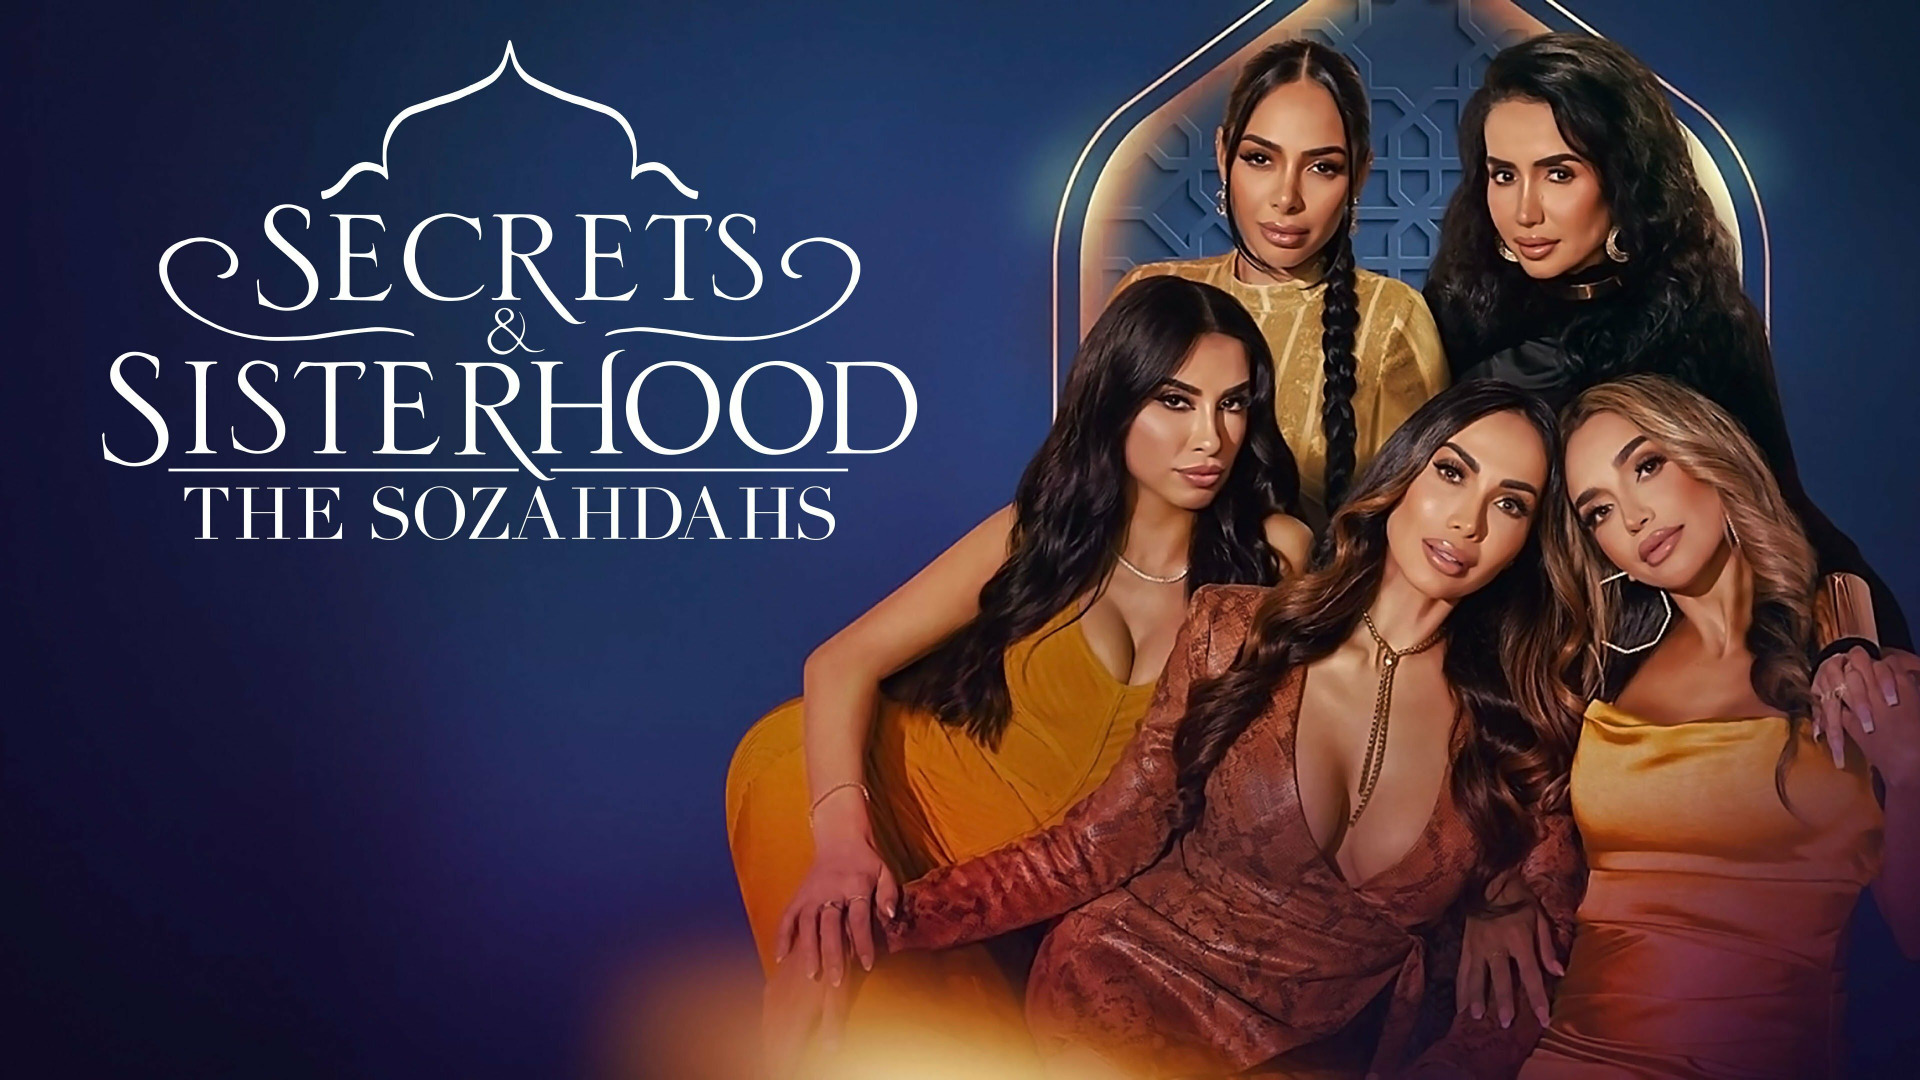 Show Secrets & Sisterhood: The Sozahdahs